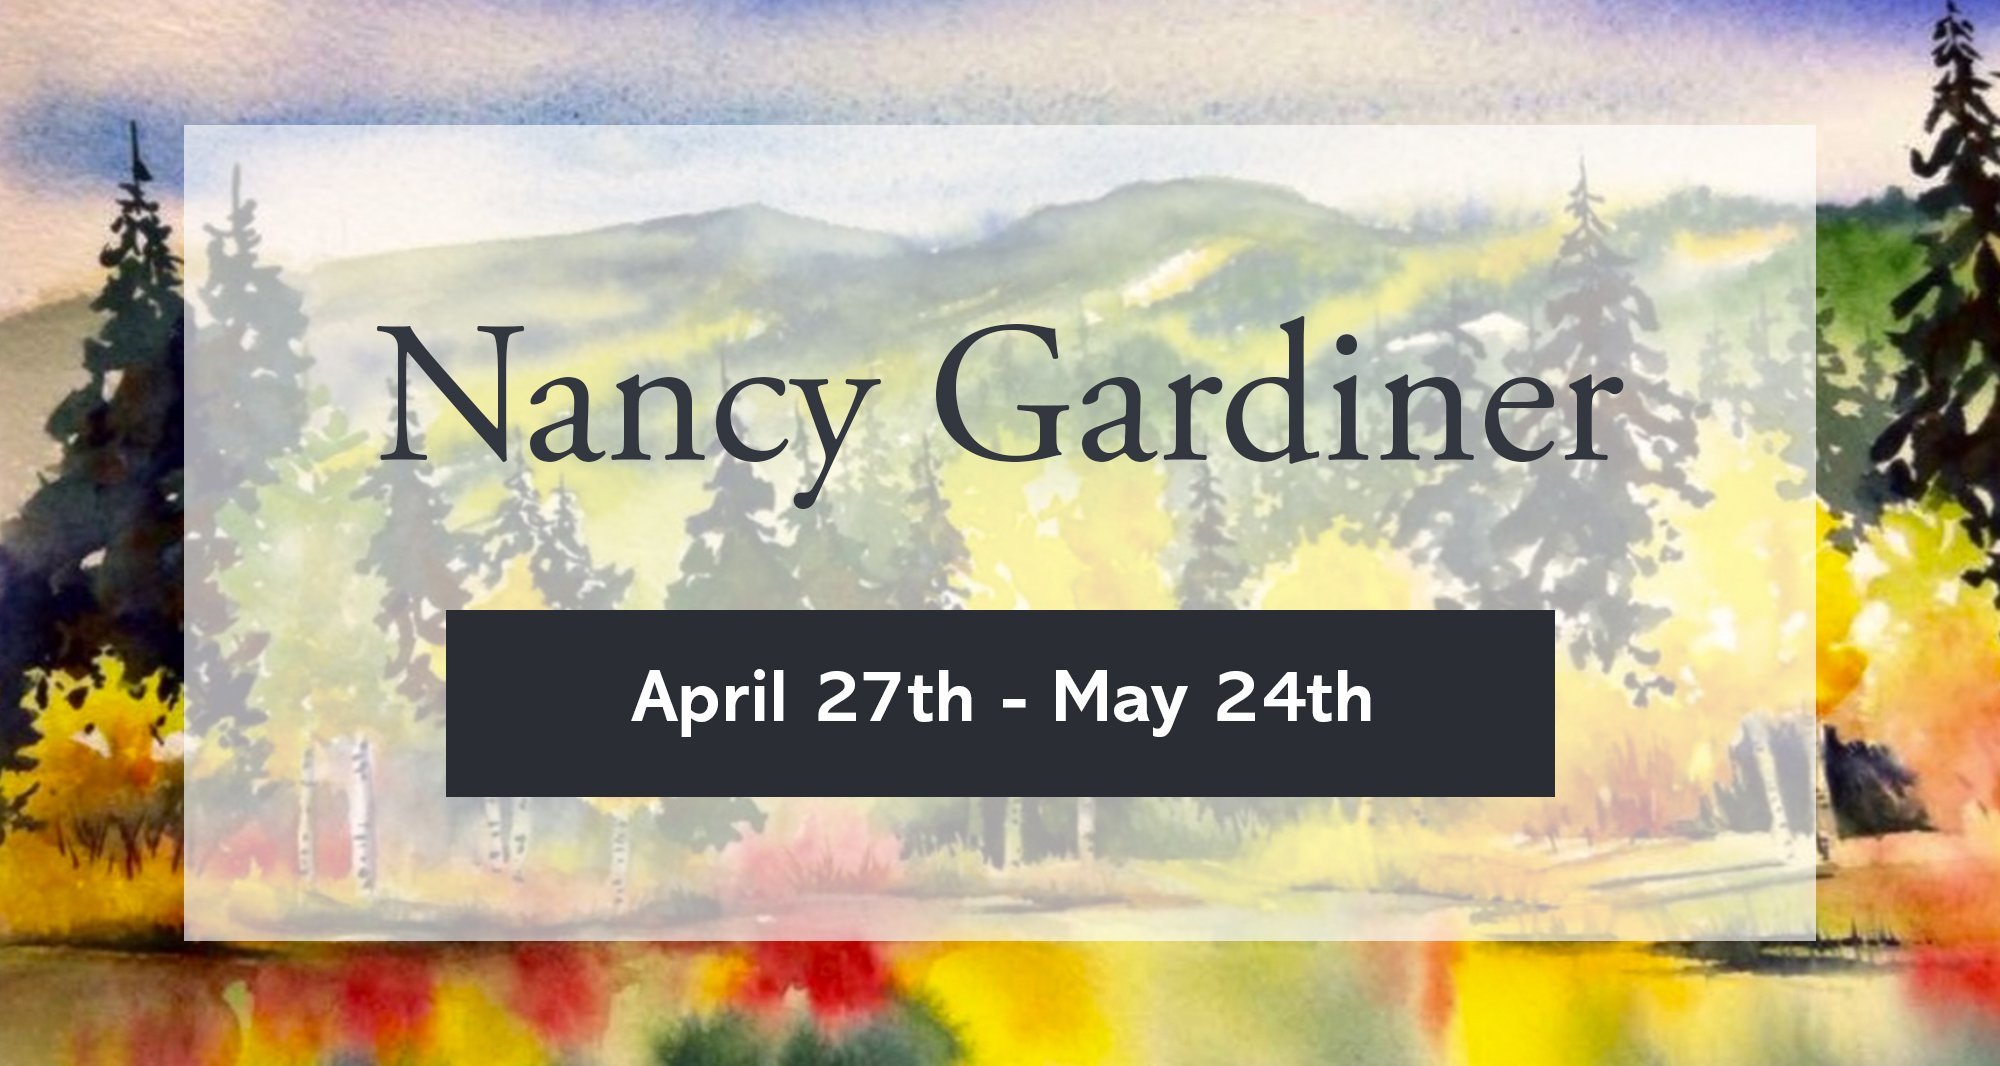 Nancy Gardiner Banner Image.jpg